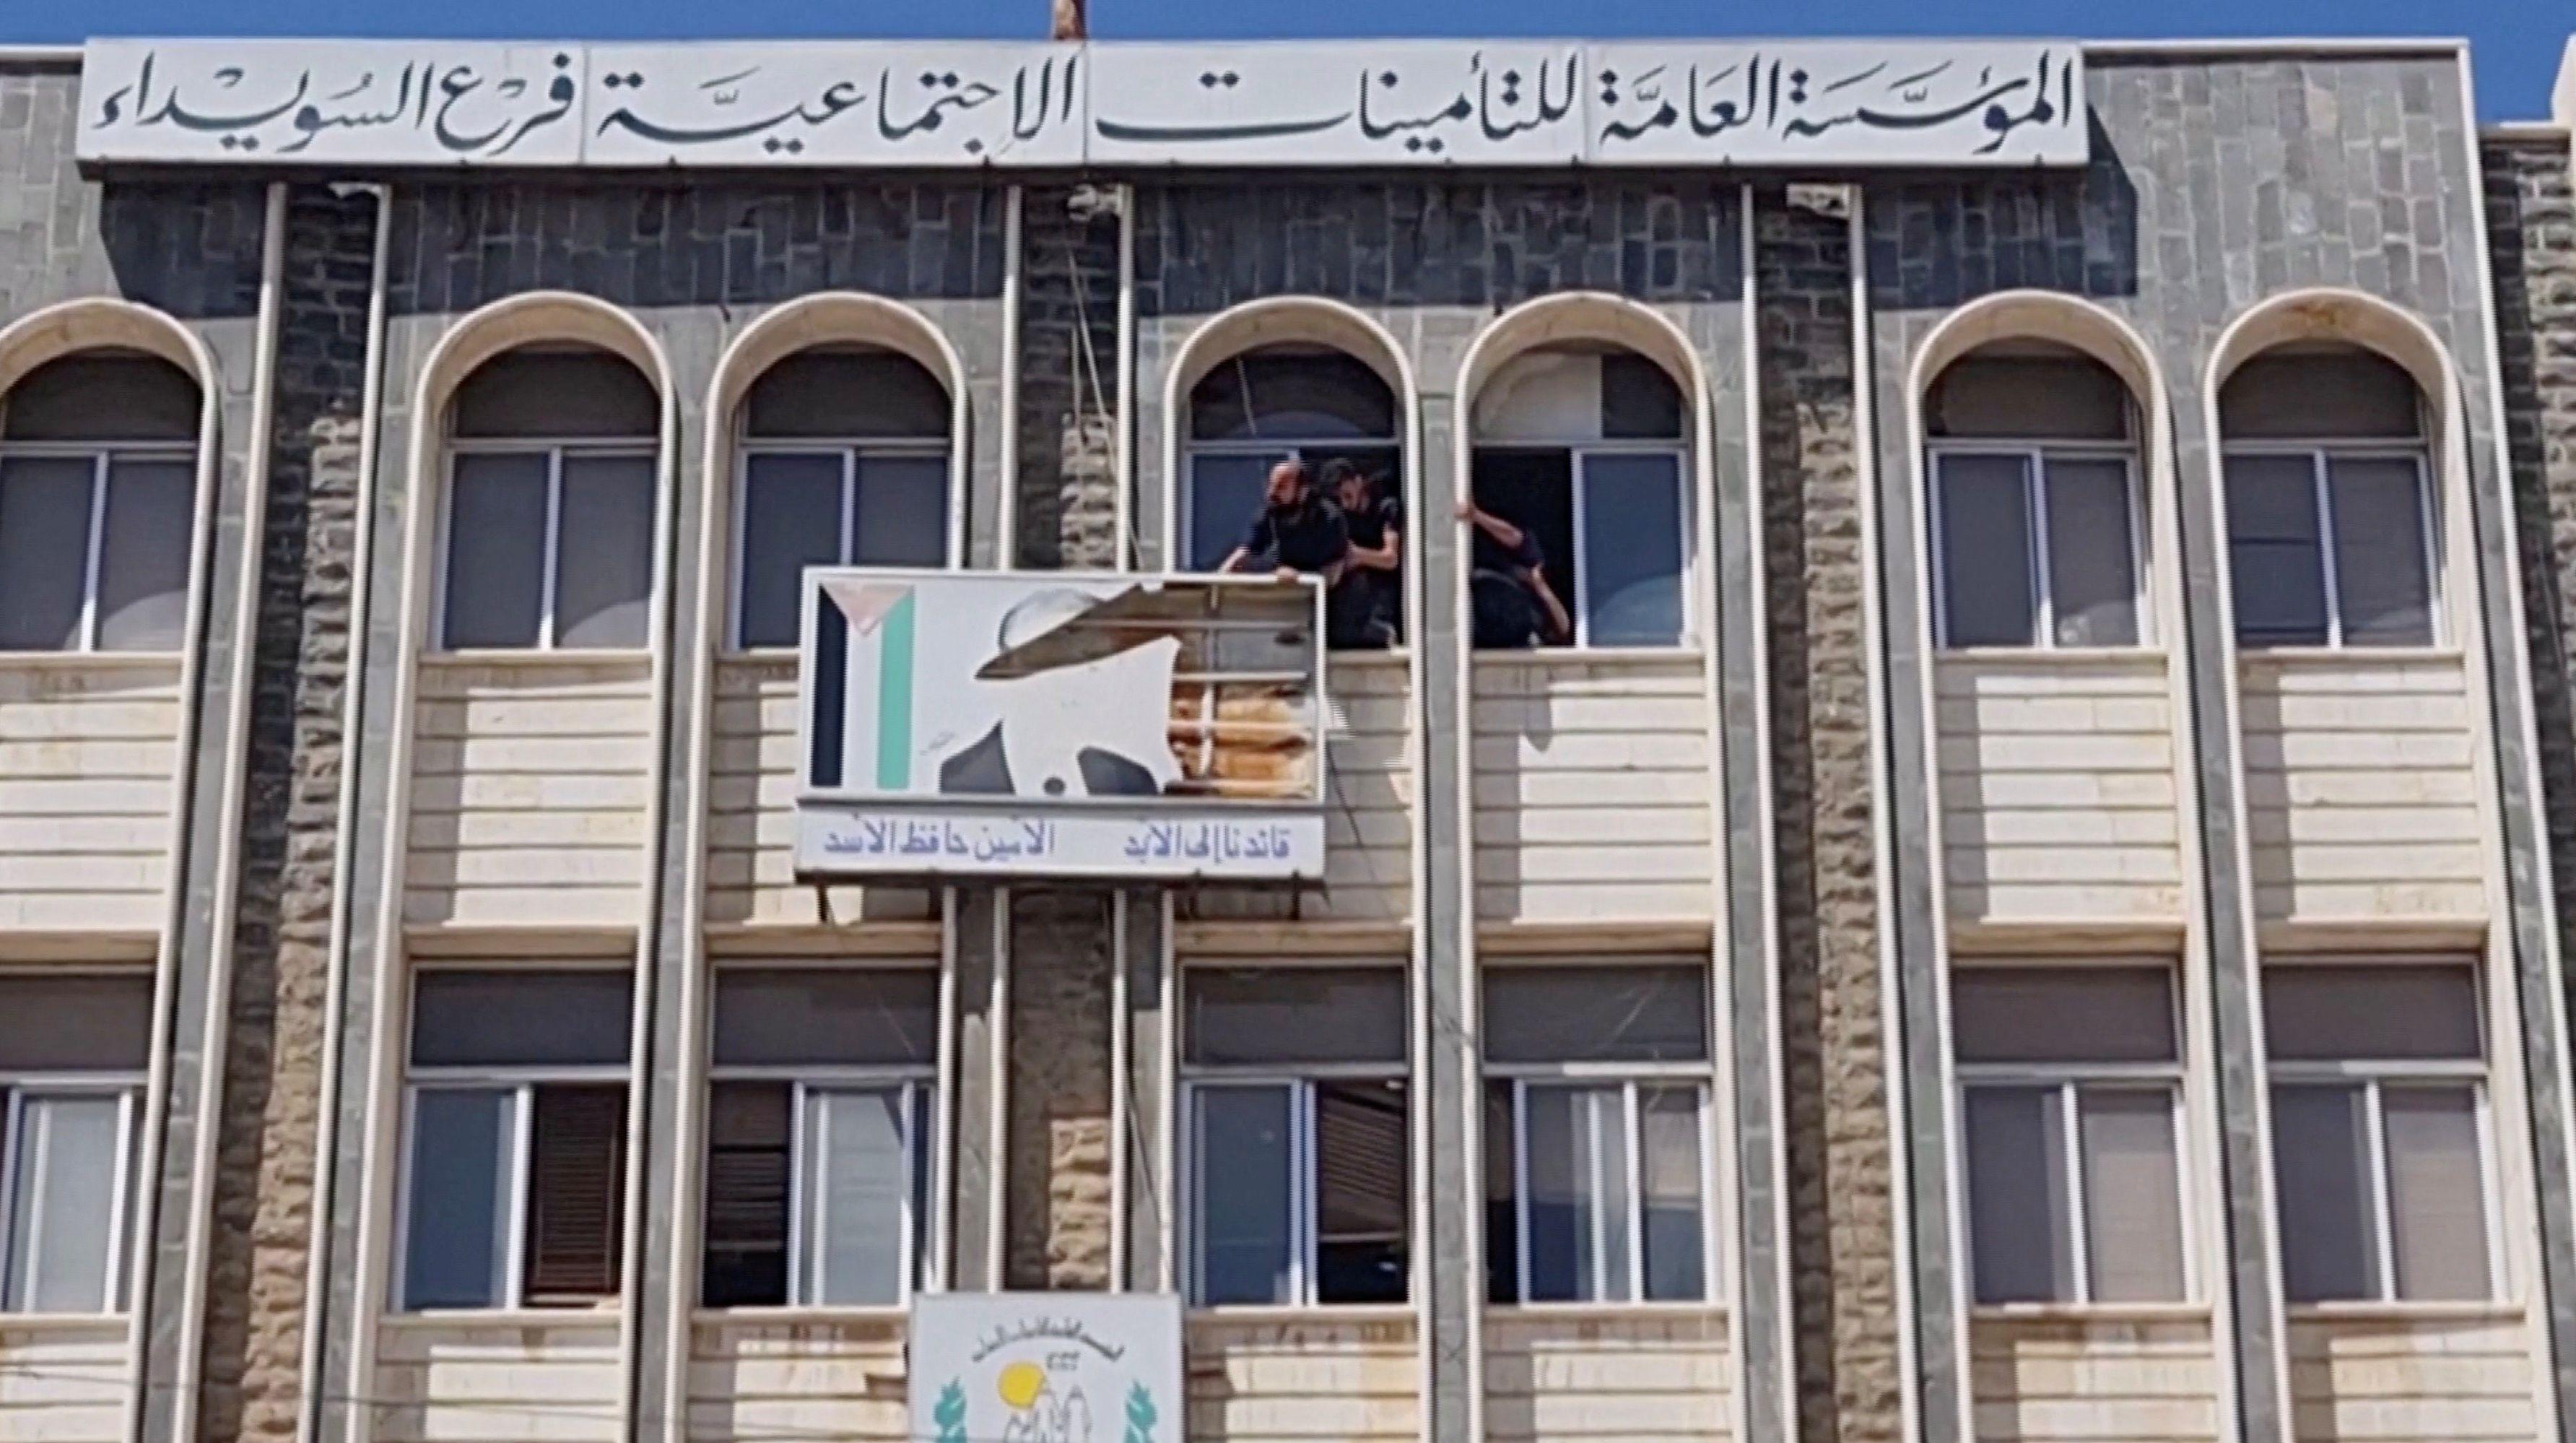 صورة لمبنى تابع للحكومة السورية في محافظة السويداء حيث أزال المتظاهرون صور بشار الأسد ووالده حافظ الأسد